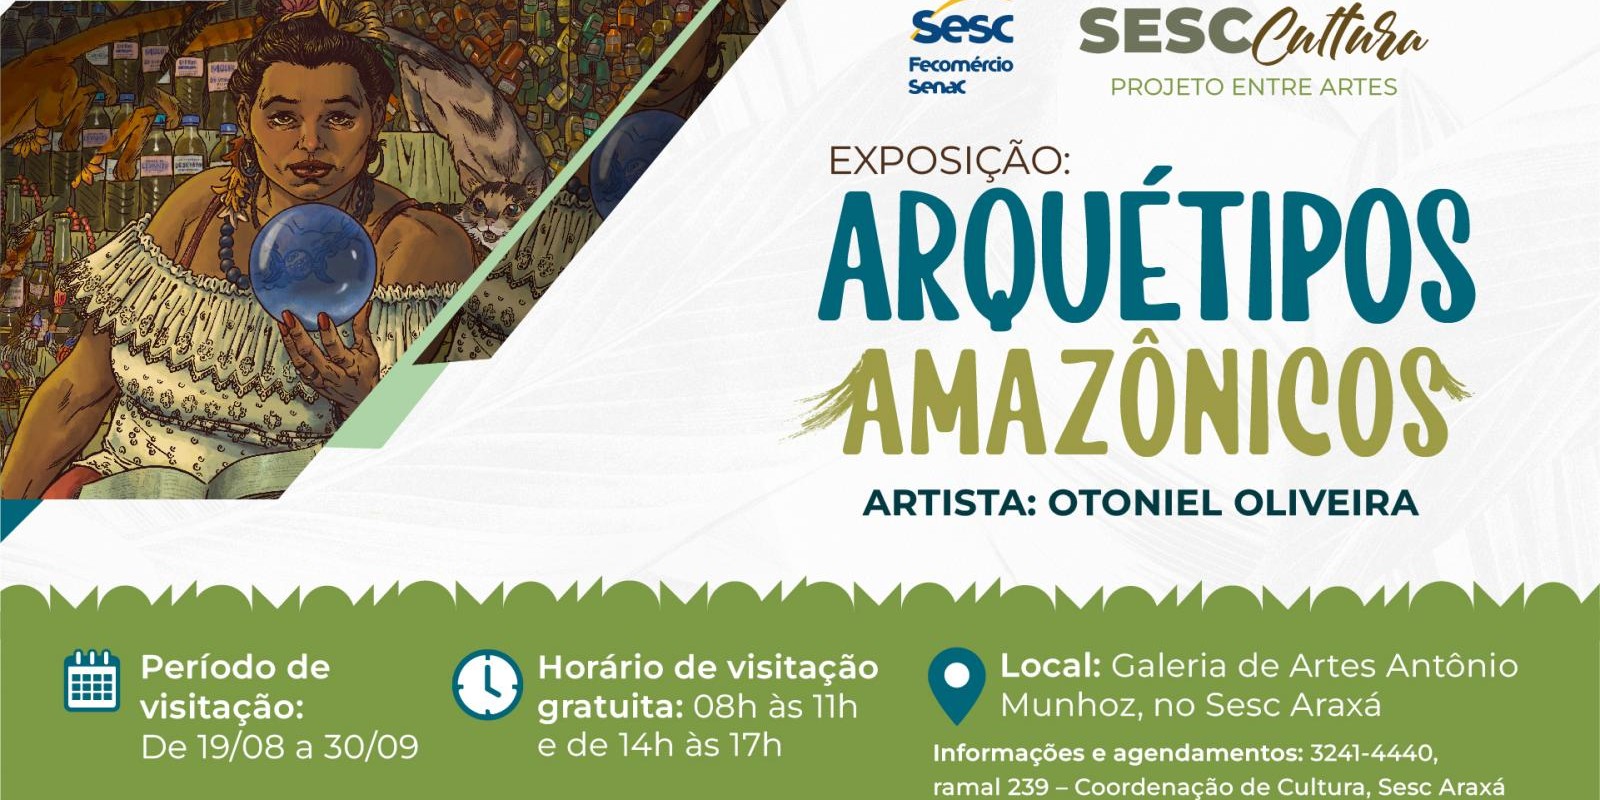 Exposição “Arquétipos Amazônicos” é aberta ao público no Sesc Araxá nesta sexta-feira (19)